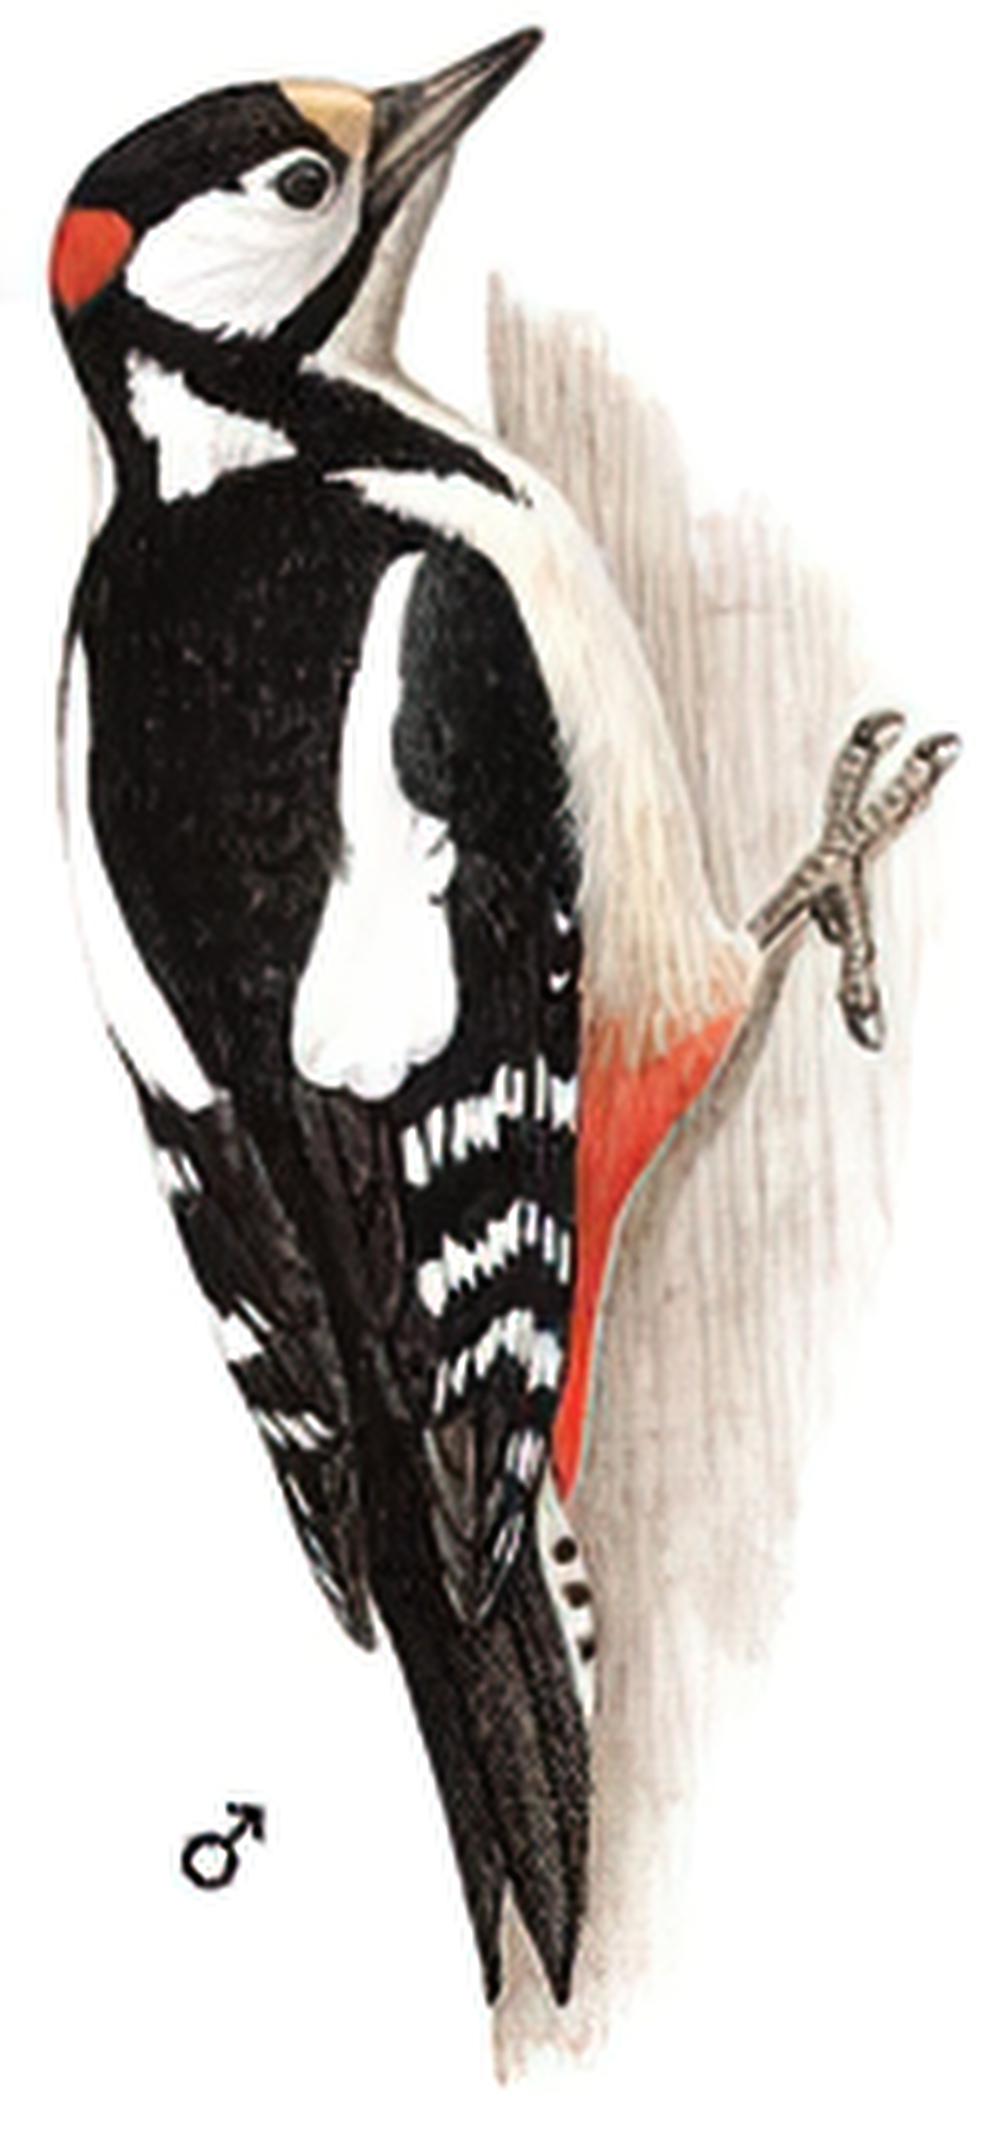 大斑啄木鸟 / Great Spotted Woodpecker / Dendrocopos major